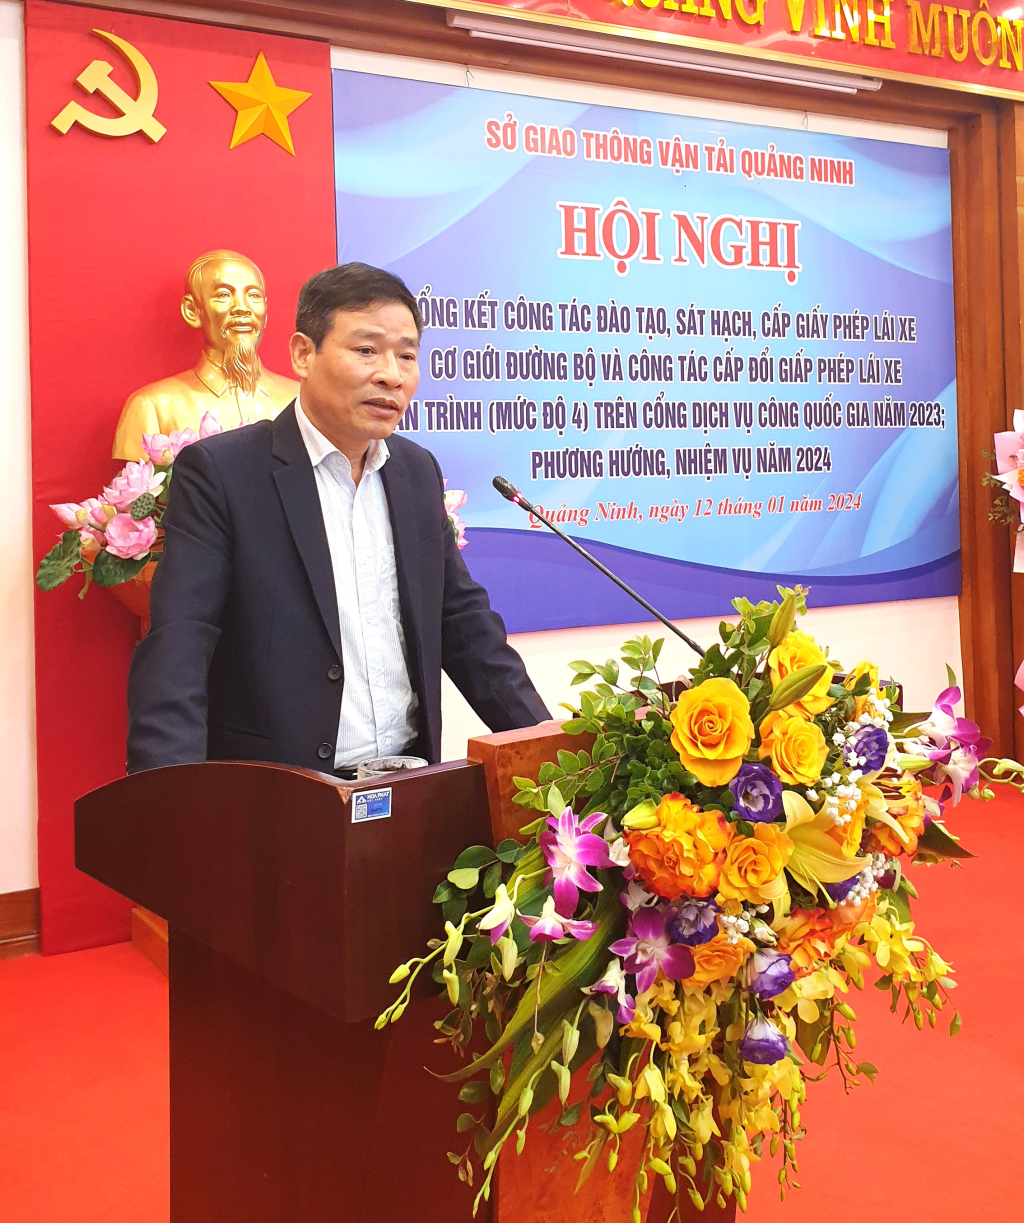 Ông Lương Duyên Thống, Trưởng phòng quản lý vận tải phương tiện người lái, Cục Đường bộ, Bộ GTVT đánh giá cao công tác quản lý nâng cao chất lượng đào tạo, sát hạch cấp GPLX tại Quảng Ninh.